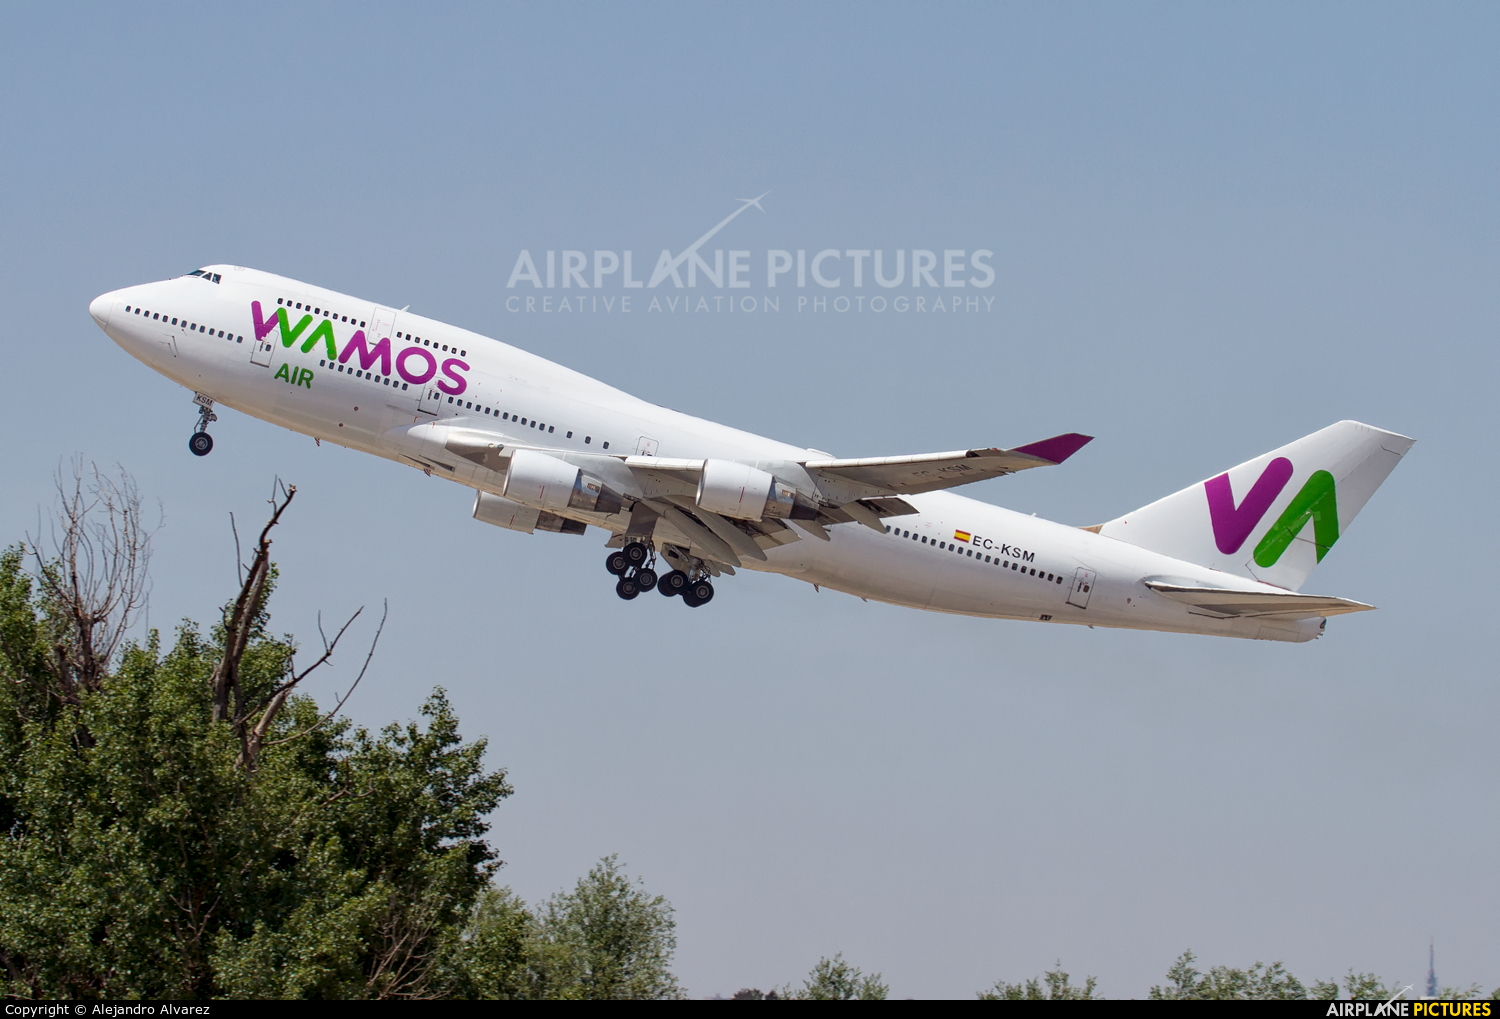 Wamos Air EC-KSM aircraft at Madrid - Barajas